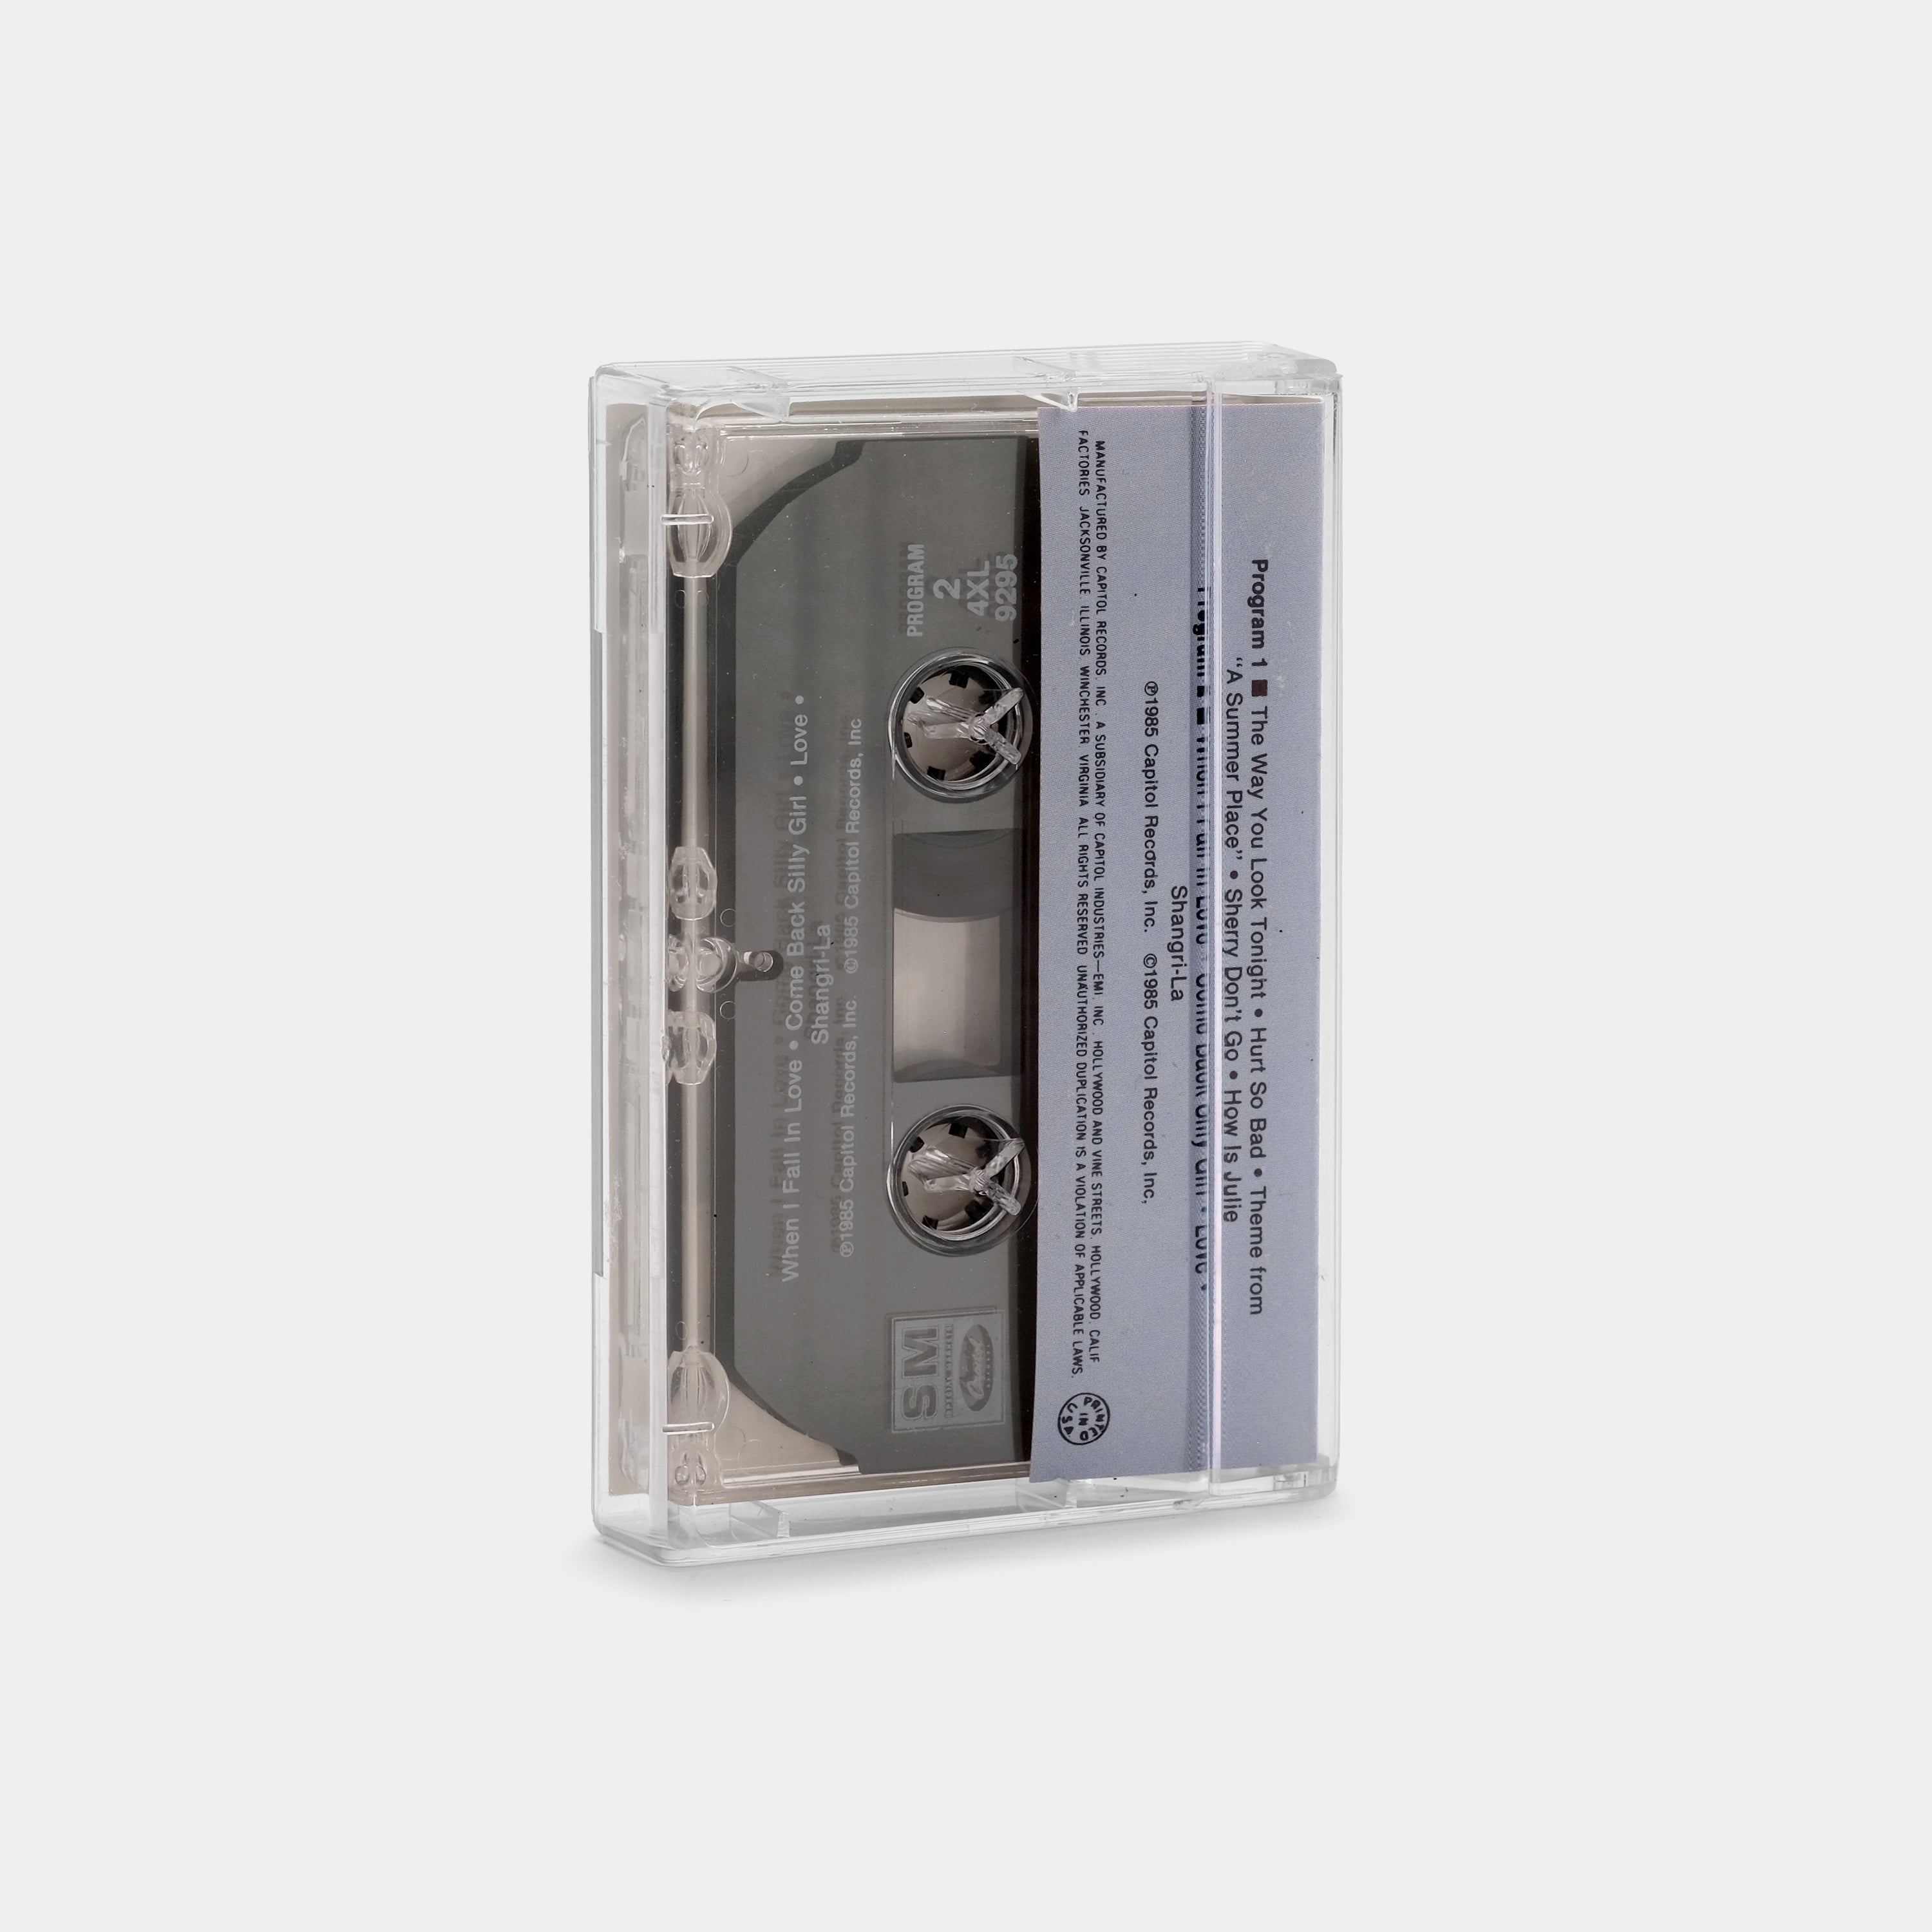 The Lettermen - Greatest Hits Cassette Tape